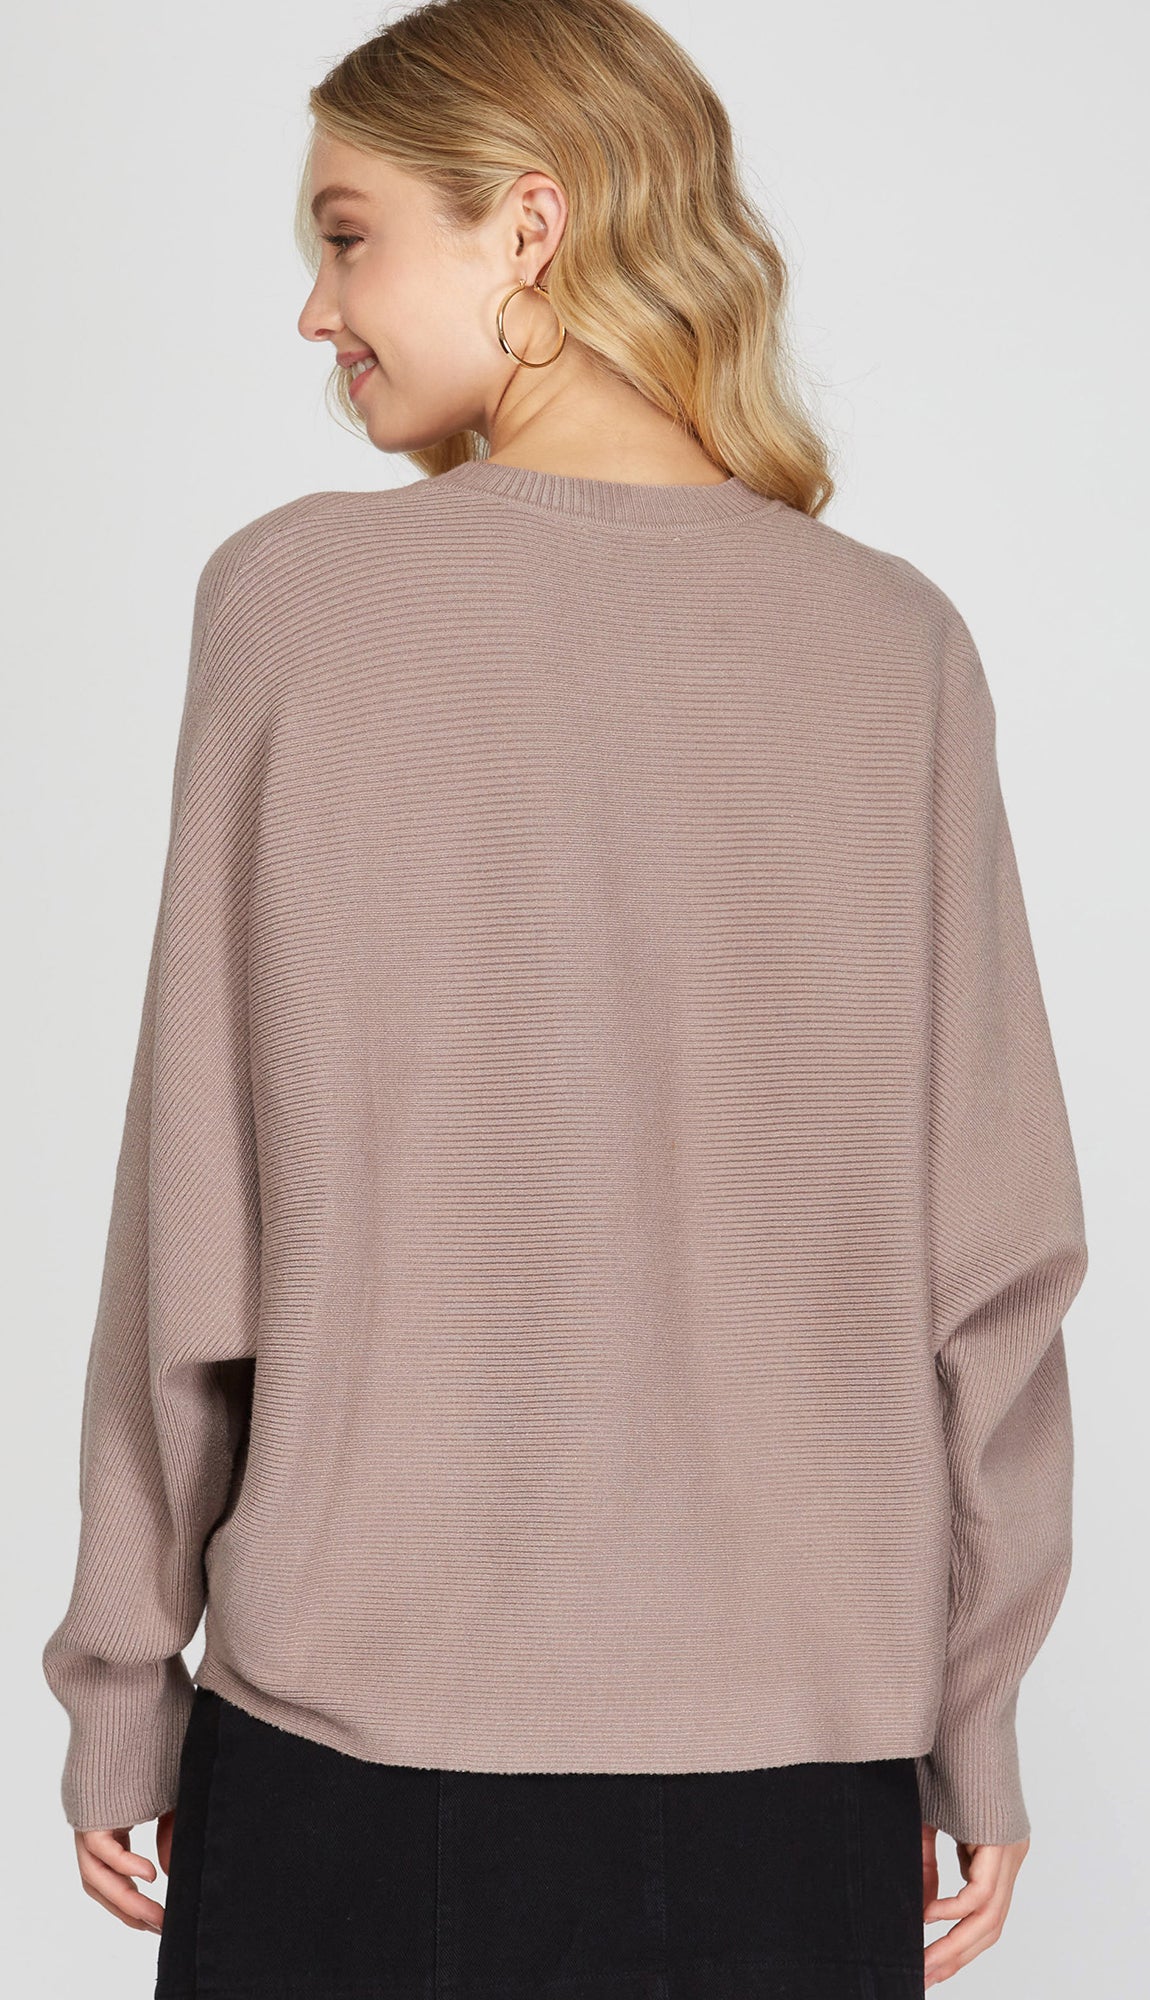 Leeza Dolman Sleeve Sweater- Mocha